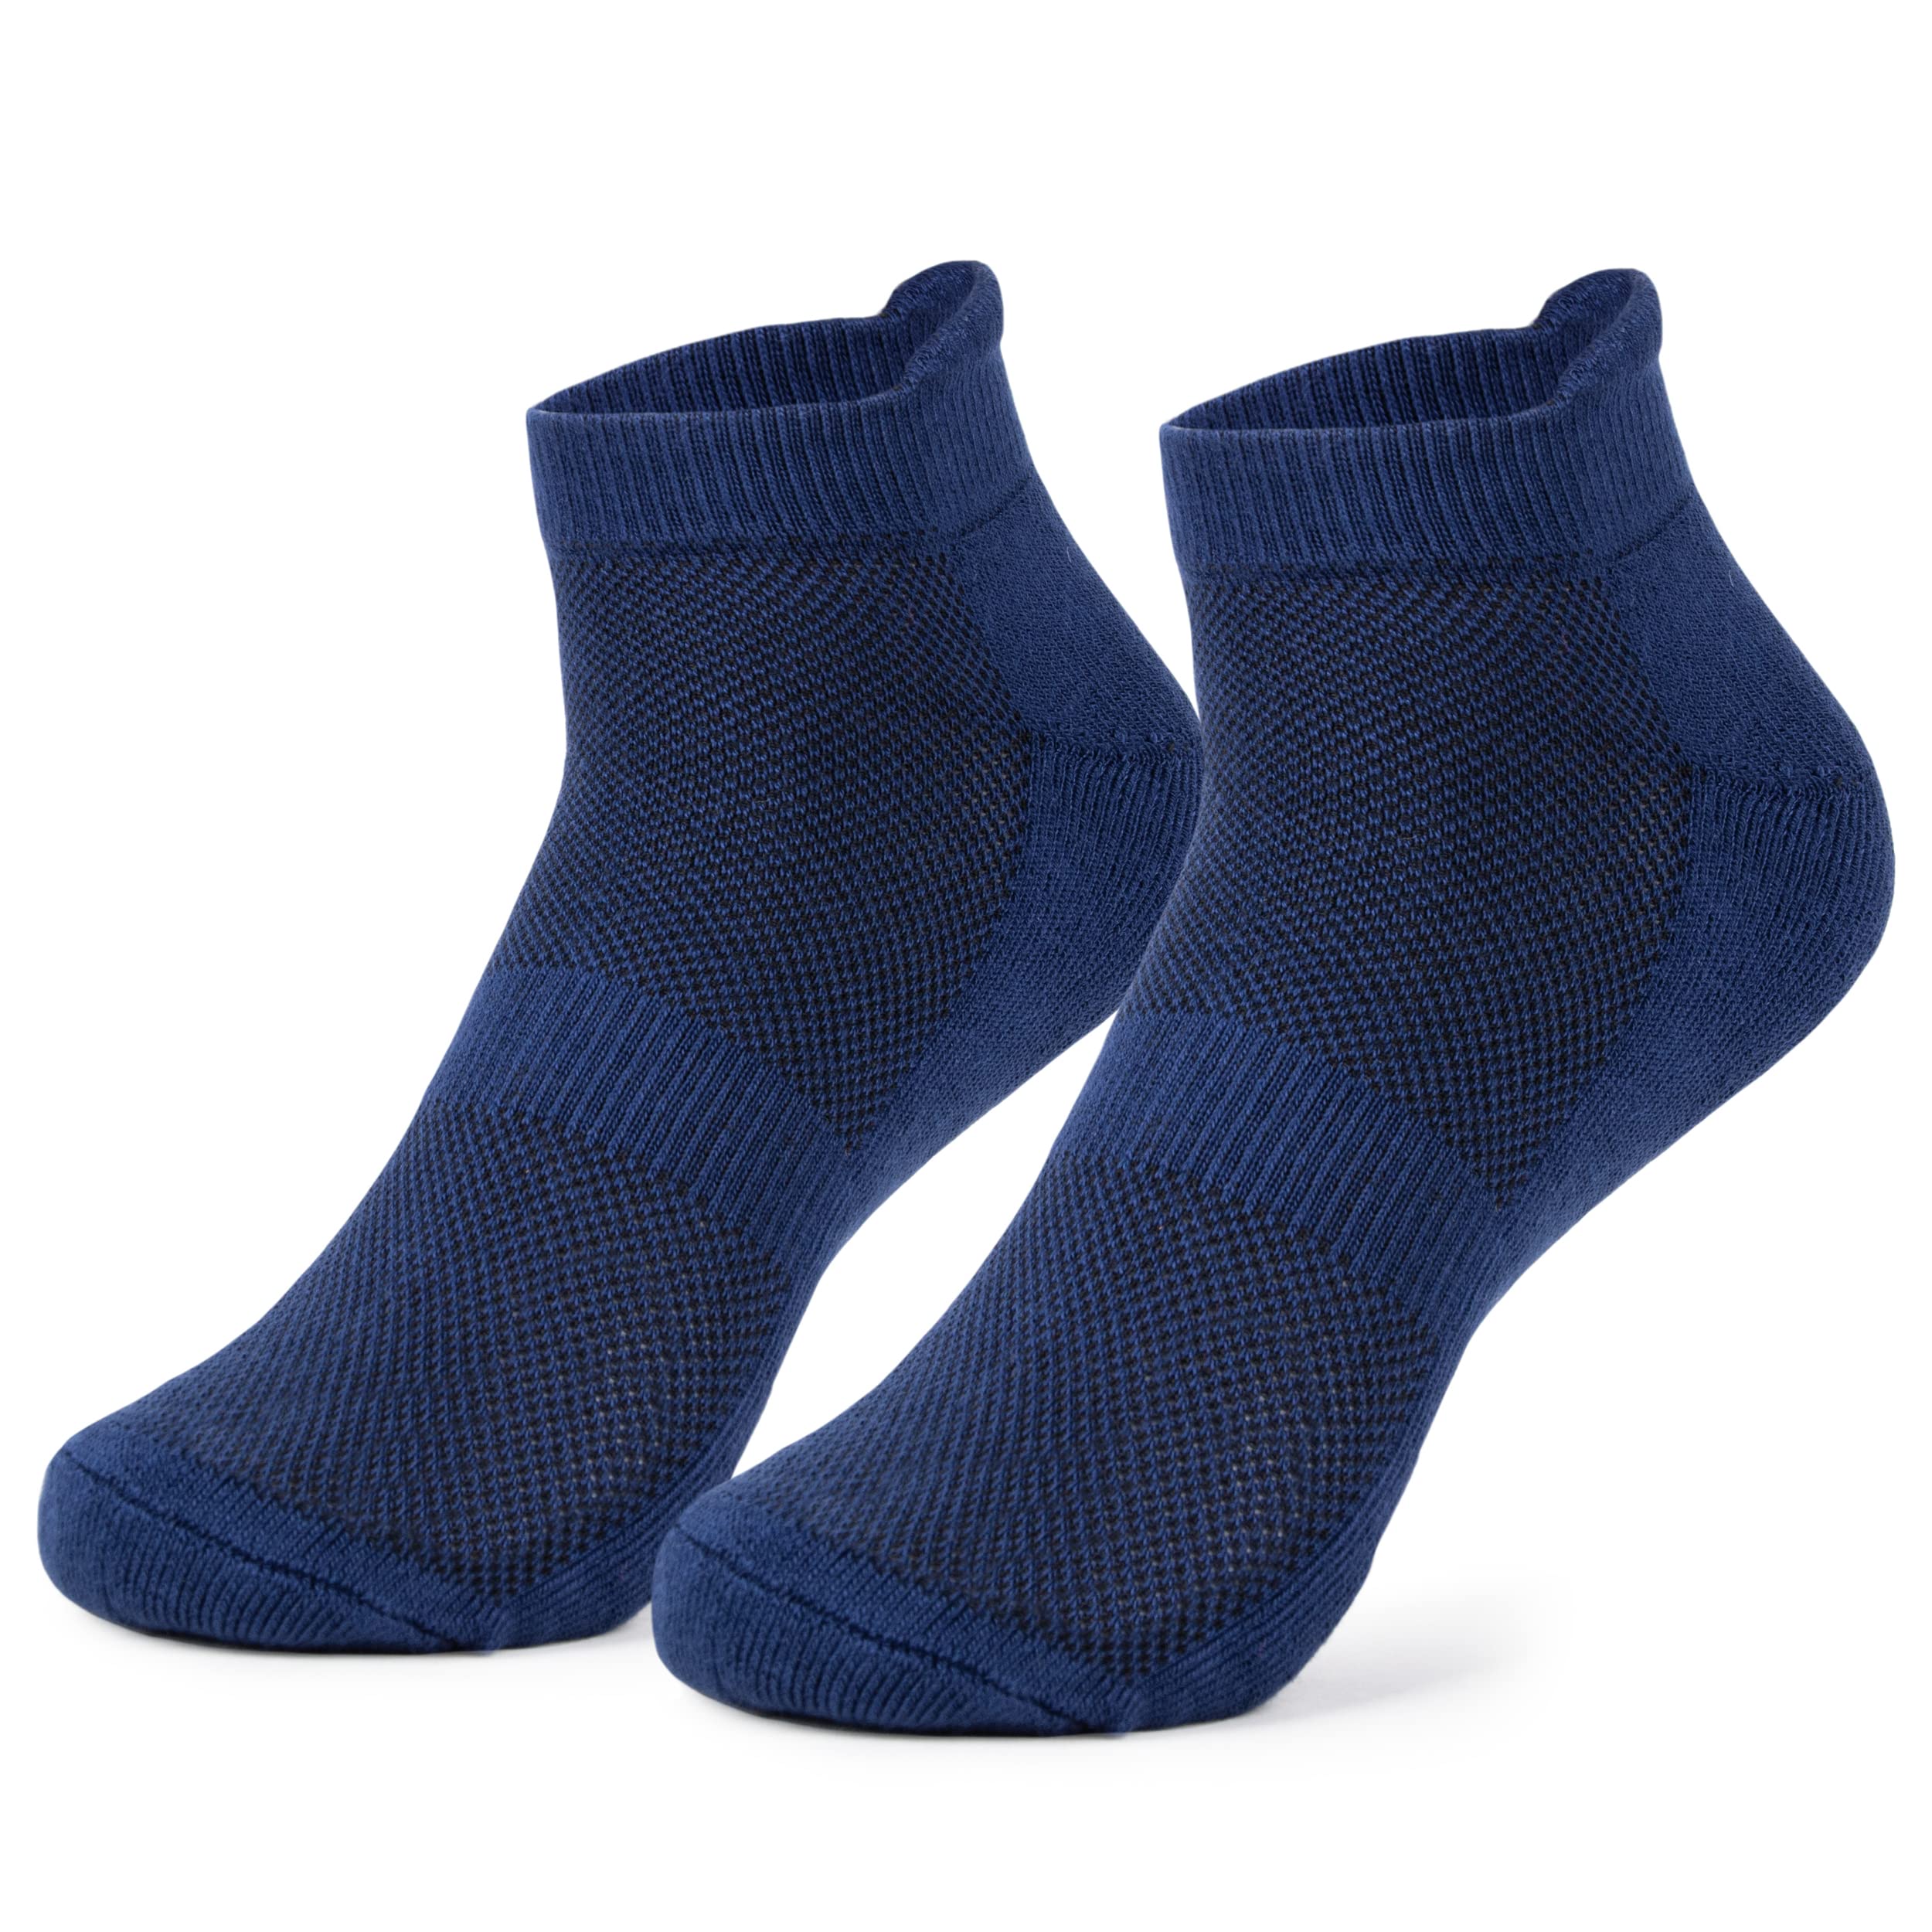 Mush Bamboo Ultra Soft, Anti Odor, Breathable, Anti Blister Ankle Socks for Men & Women for Running, Sports & Gym (Pack of 3)